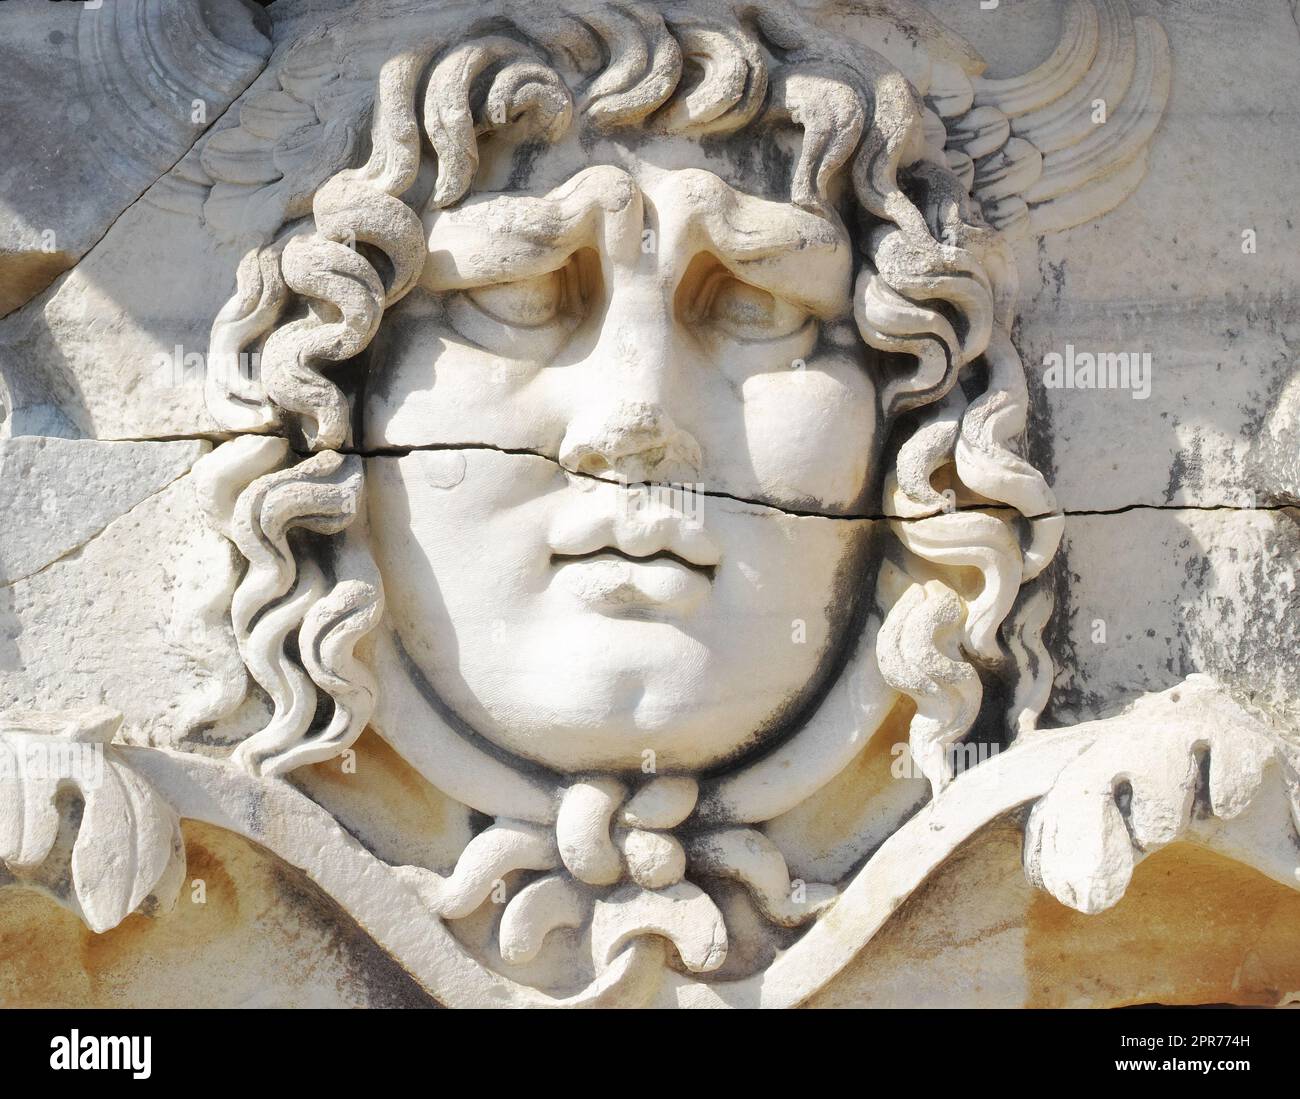 Nahaufnahme eines Gesichts, das im klassischen Stil von alten Griechen auf Marmor geschnitzt wurde, am Tempel des Apollo in Didyma. Eine beeindruckende Ruine oder Statue in der griechischen Stadt Miletus im Südwesten der Türkei Stockfoto